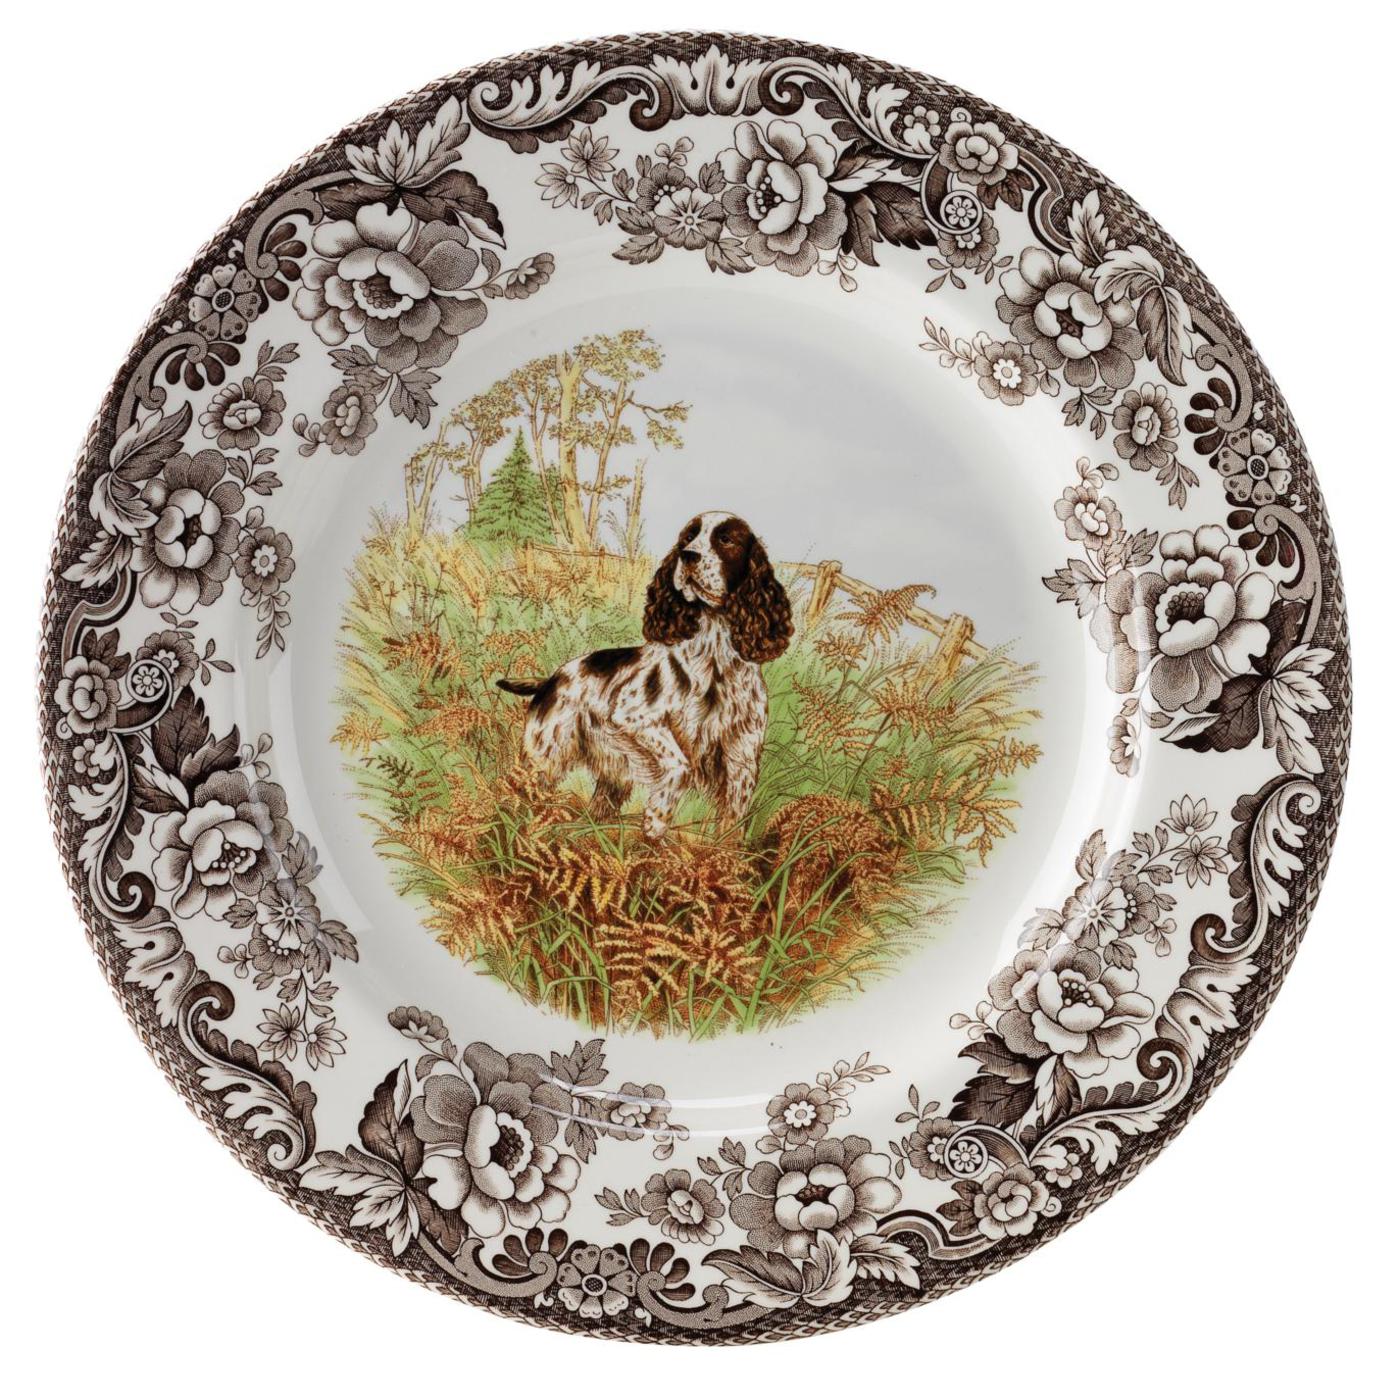 Spode Woodland Dinner Plate, Spaniel